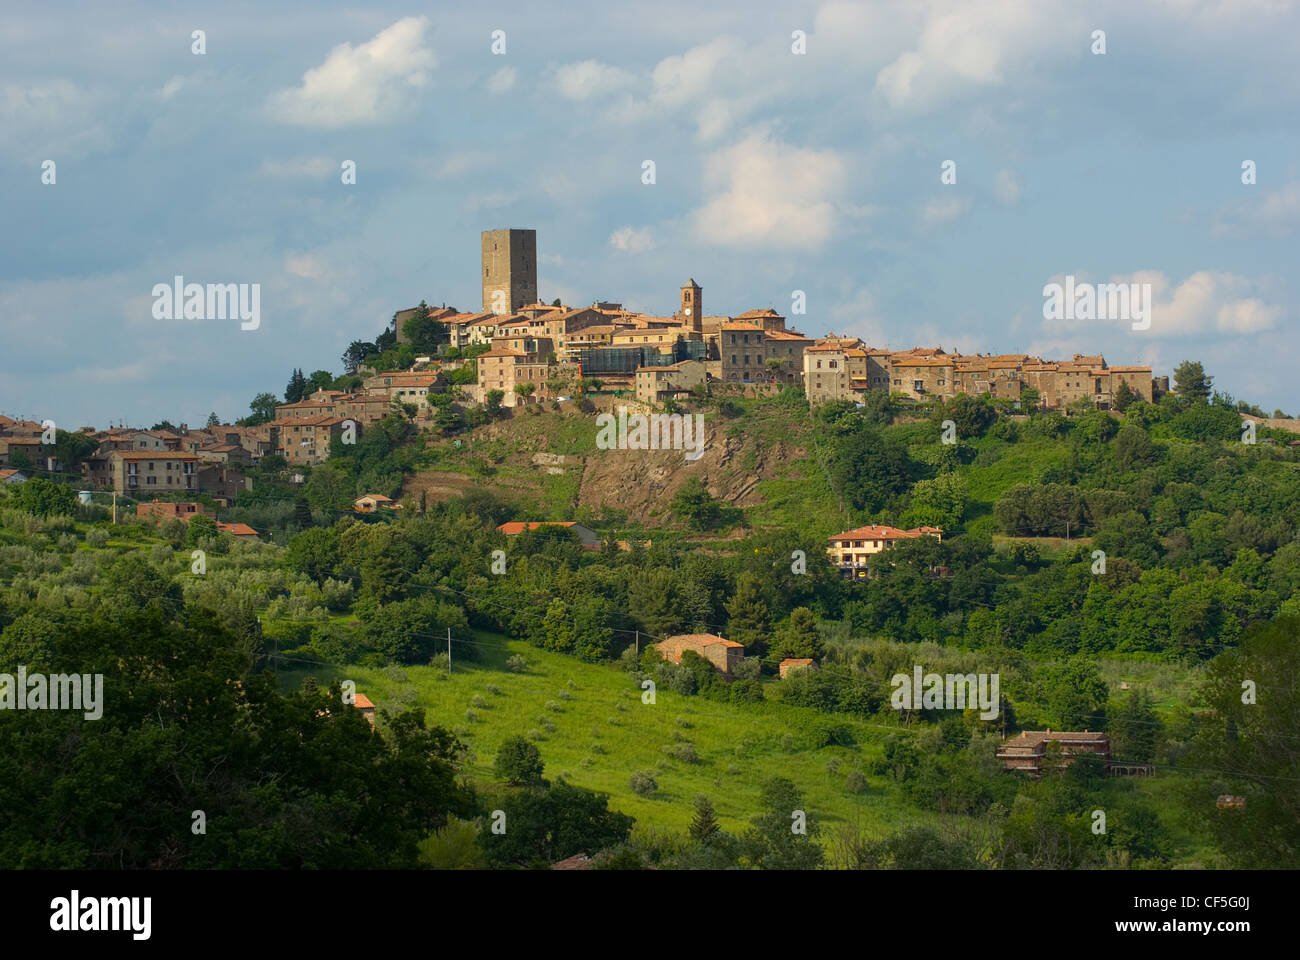 Montecatini Val di Cecina ist eine Stadt in der Provinz 'PISA' in der Toskana mit ca. 1928 Einwohnern. Foto Stock